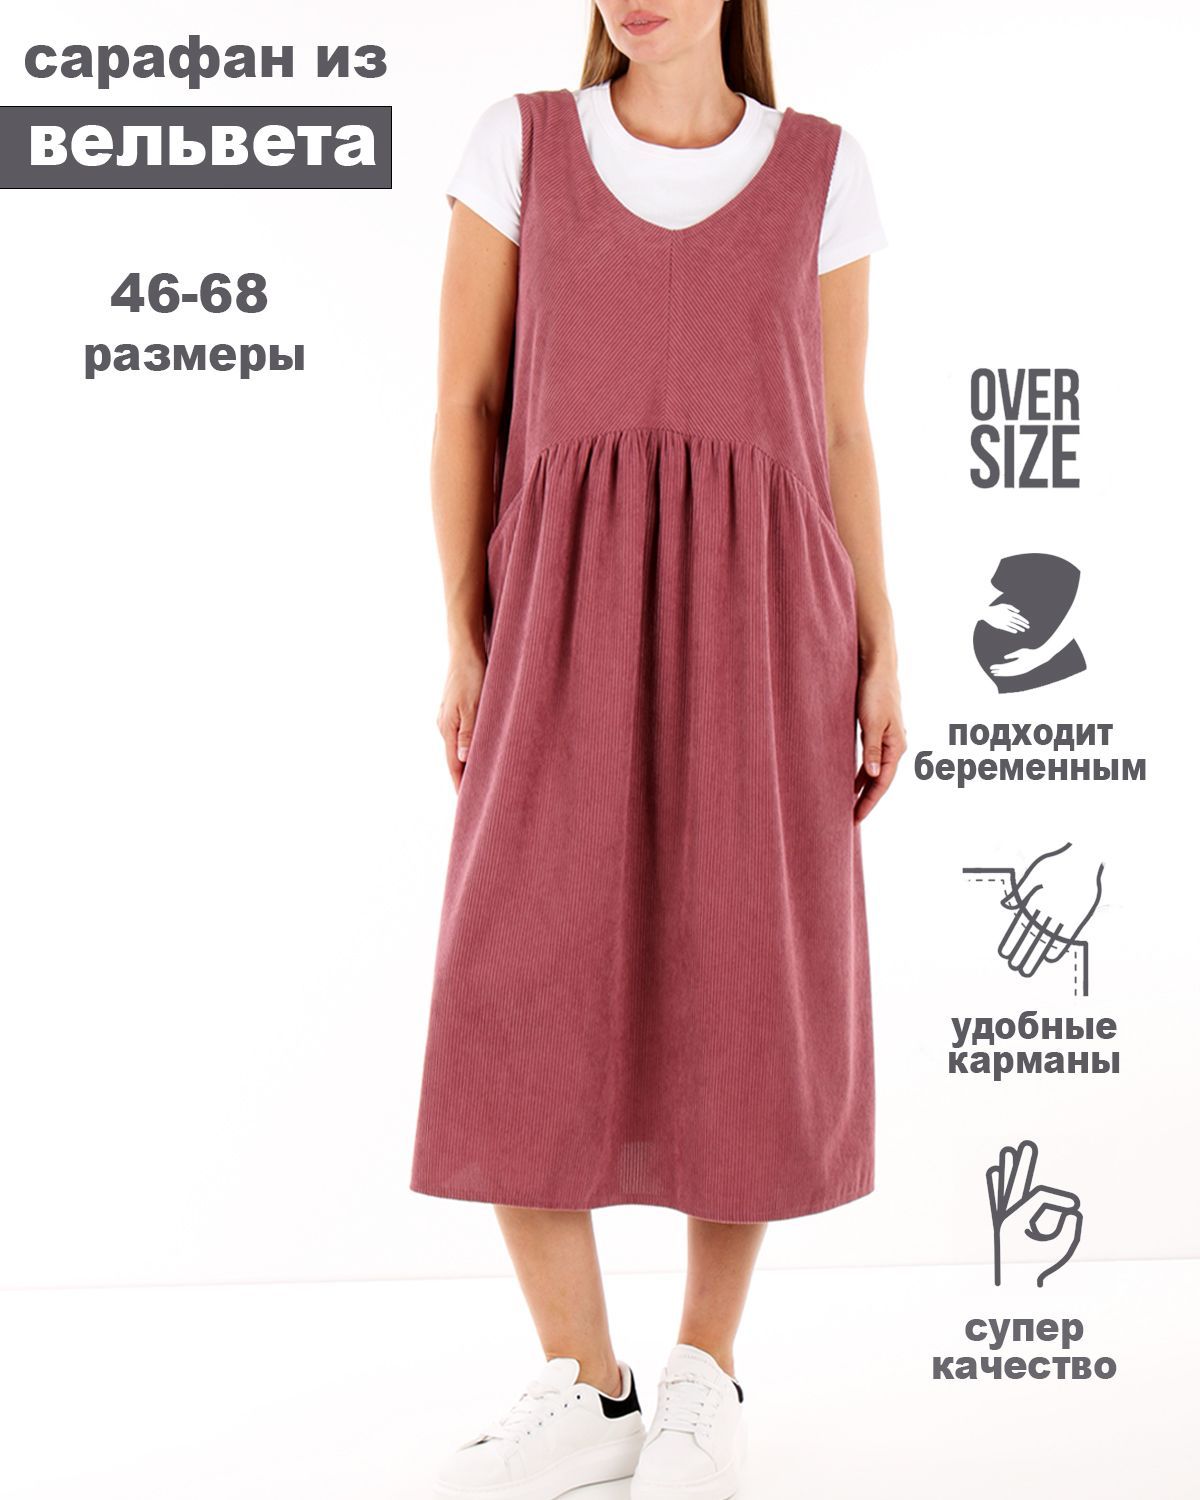 Платье-Сарафан Можно носить зимой с водолазками или выбрать один из наших | Instagram